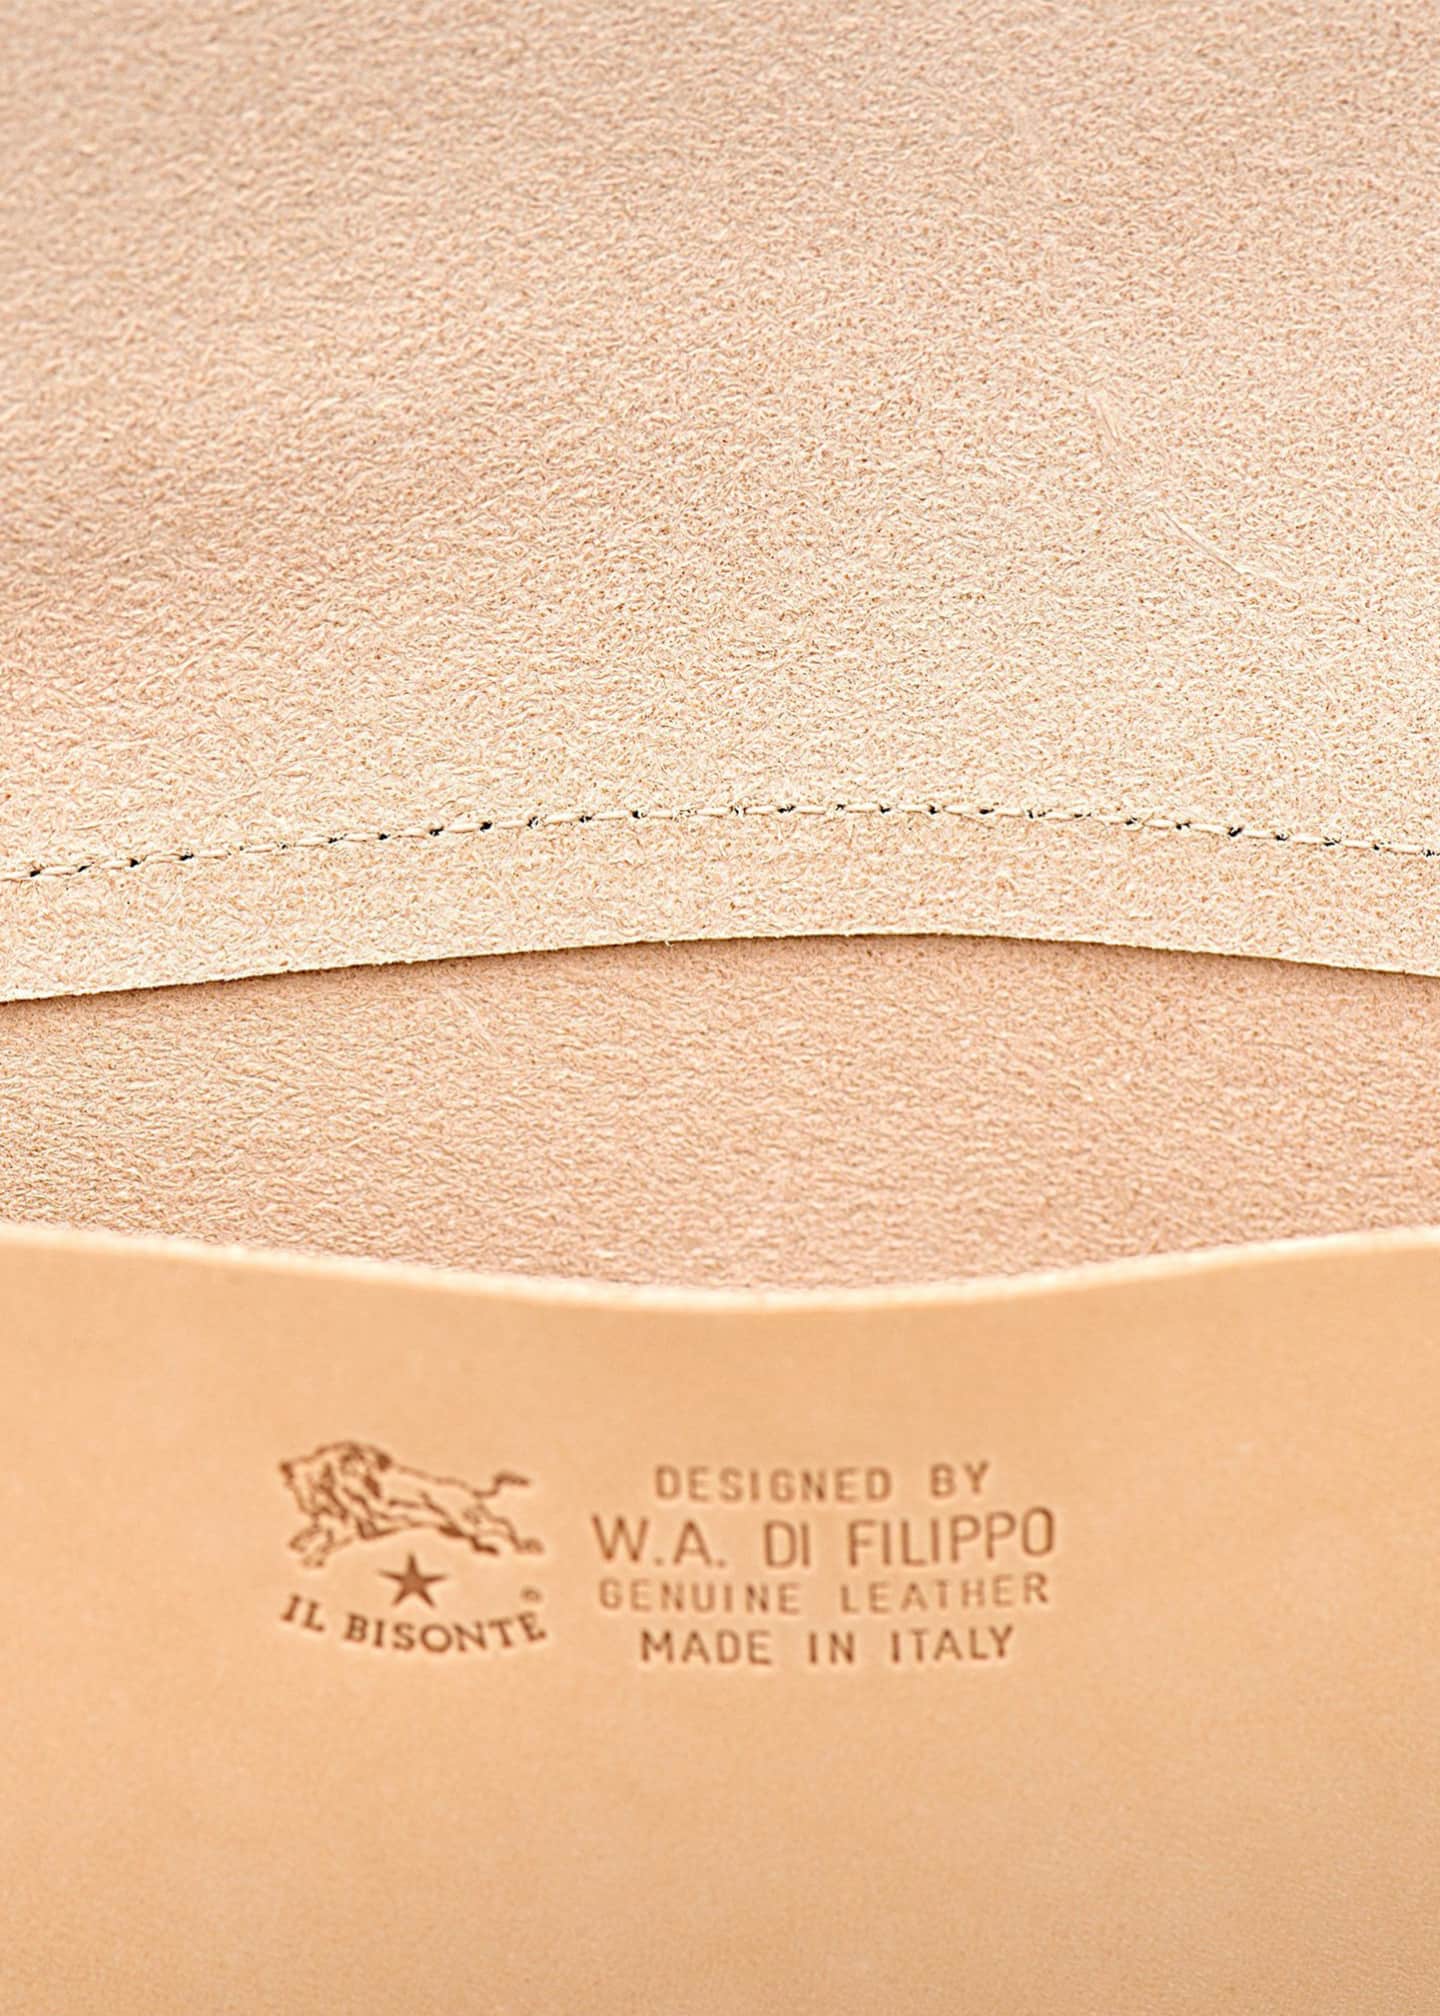 Italian Vachetta Leather Belt - Brown